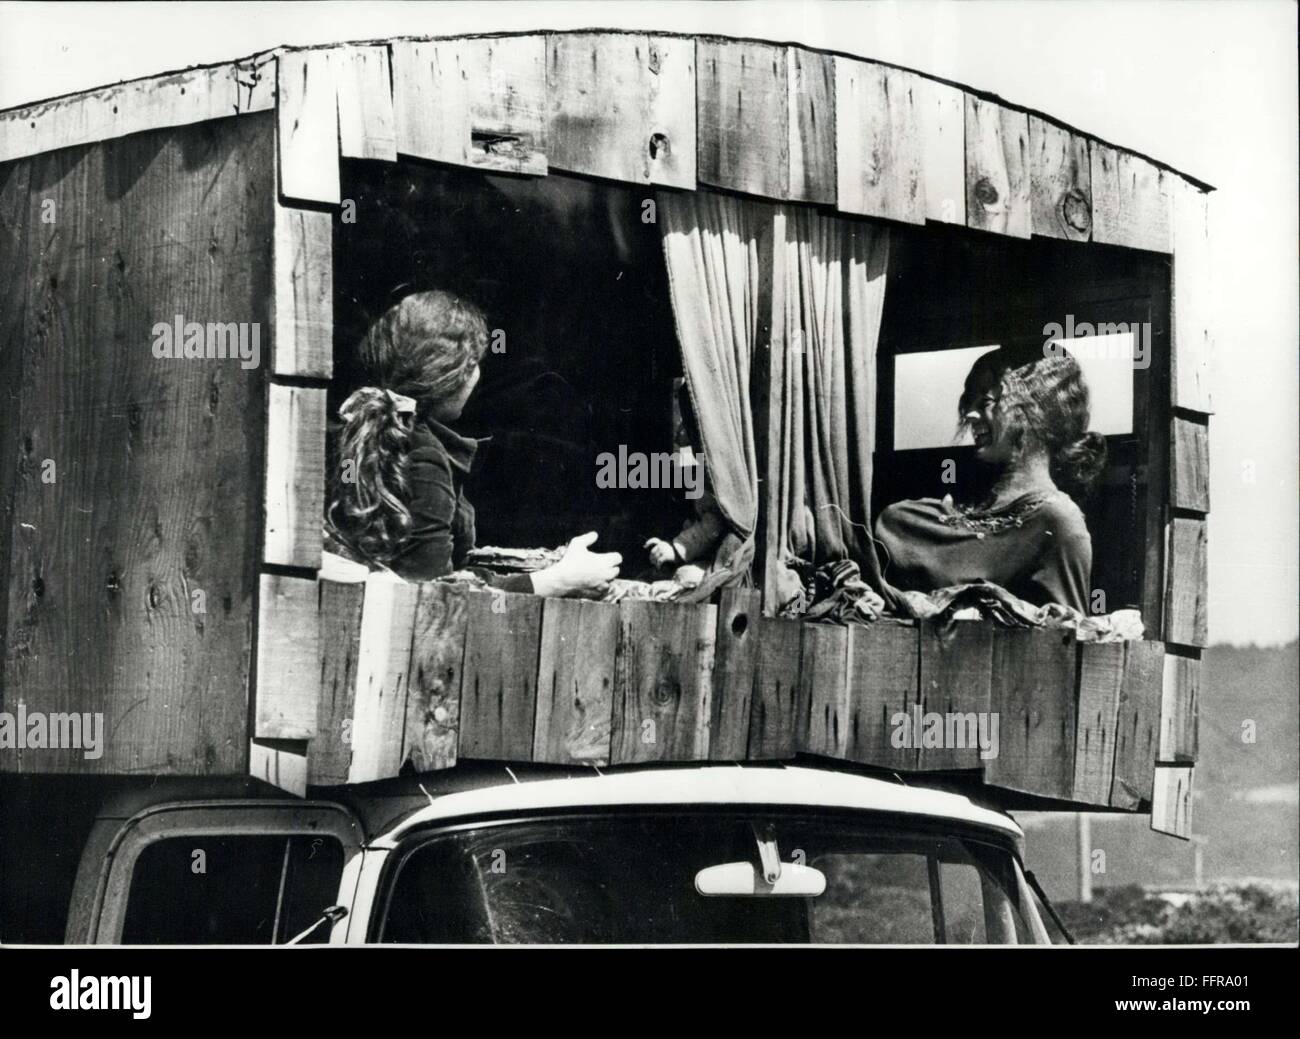 1974 - Hippie Hippies Kaliforniens neue Rasse von Gipsy: der Drang, Drop-out-hat eine neue Generation von Gipsy auf Nebenstraßen von Kalifornien gebracht. Mehr Menschen als je zuvor zu den Straßen nehmen. Hippies, Kunstliebhaber, rebelliert gegen das System. Sie leben in Wohnwagen und umgebauten Verschiebung LKW. Sehen Sie hier ist ein Eindruck vom Leben in das Privatleben von San Francisco non-Konformisten, die das Leben in Bewegung zu bevorzugen. © Keystone Bilder USA/ZUMAPRESS.com/Alamy Live-Nachrichten Stockfoto